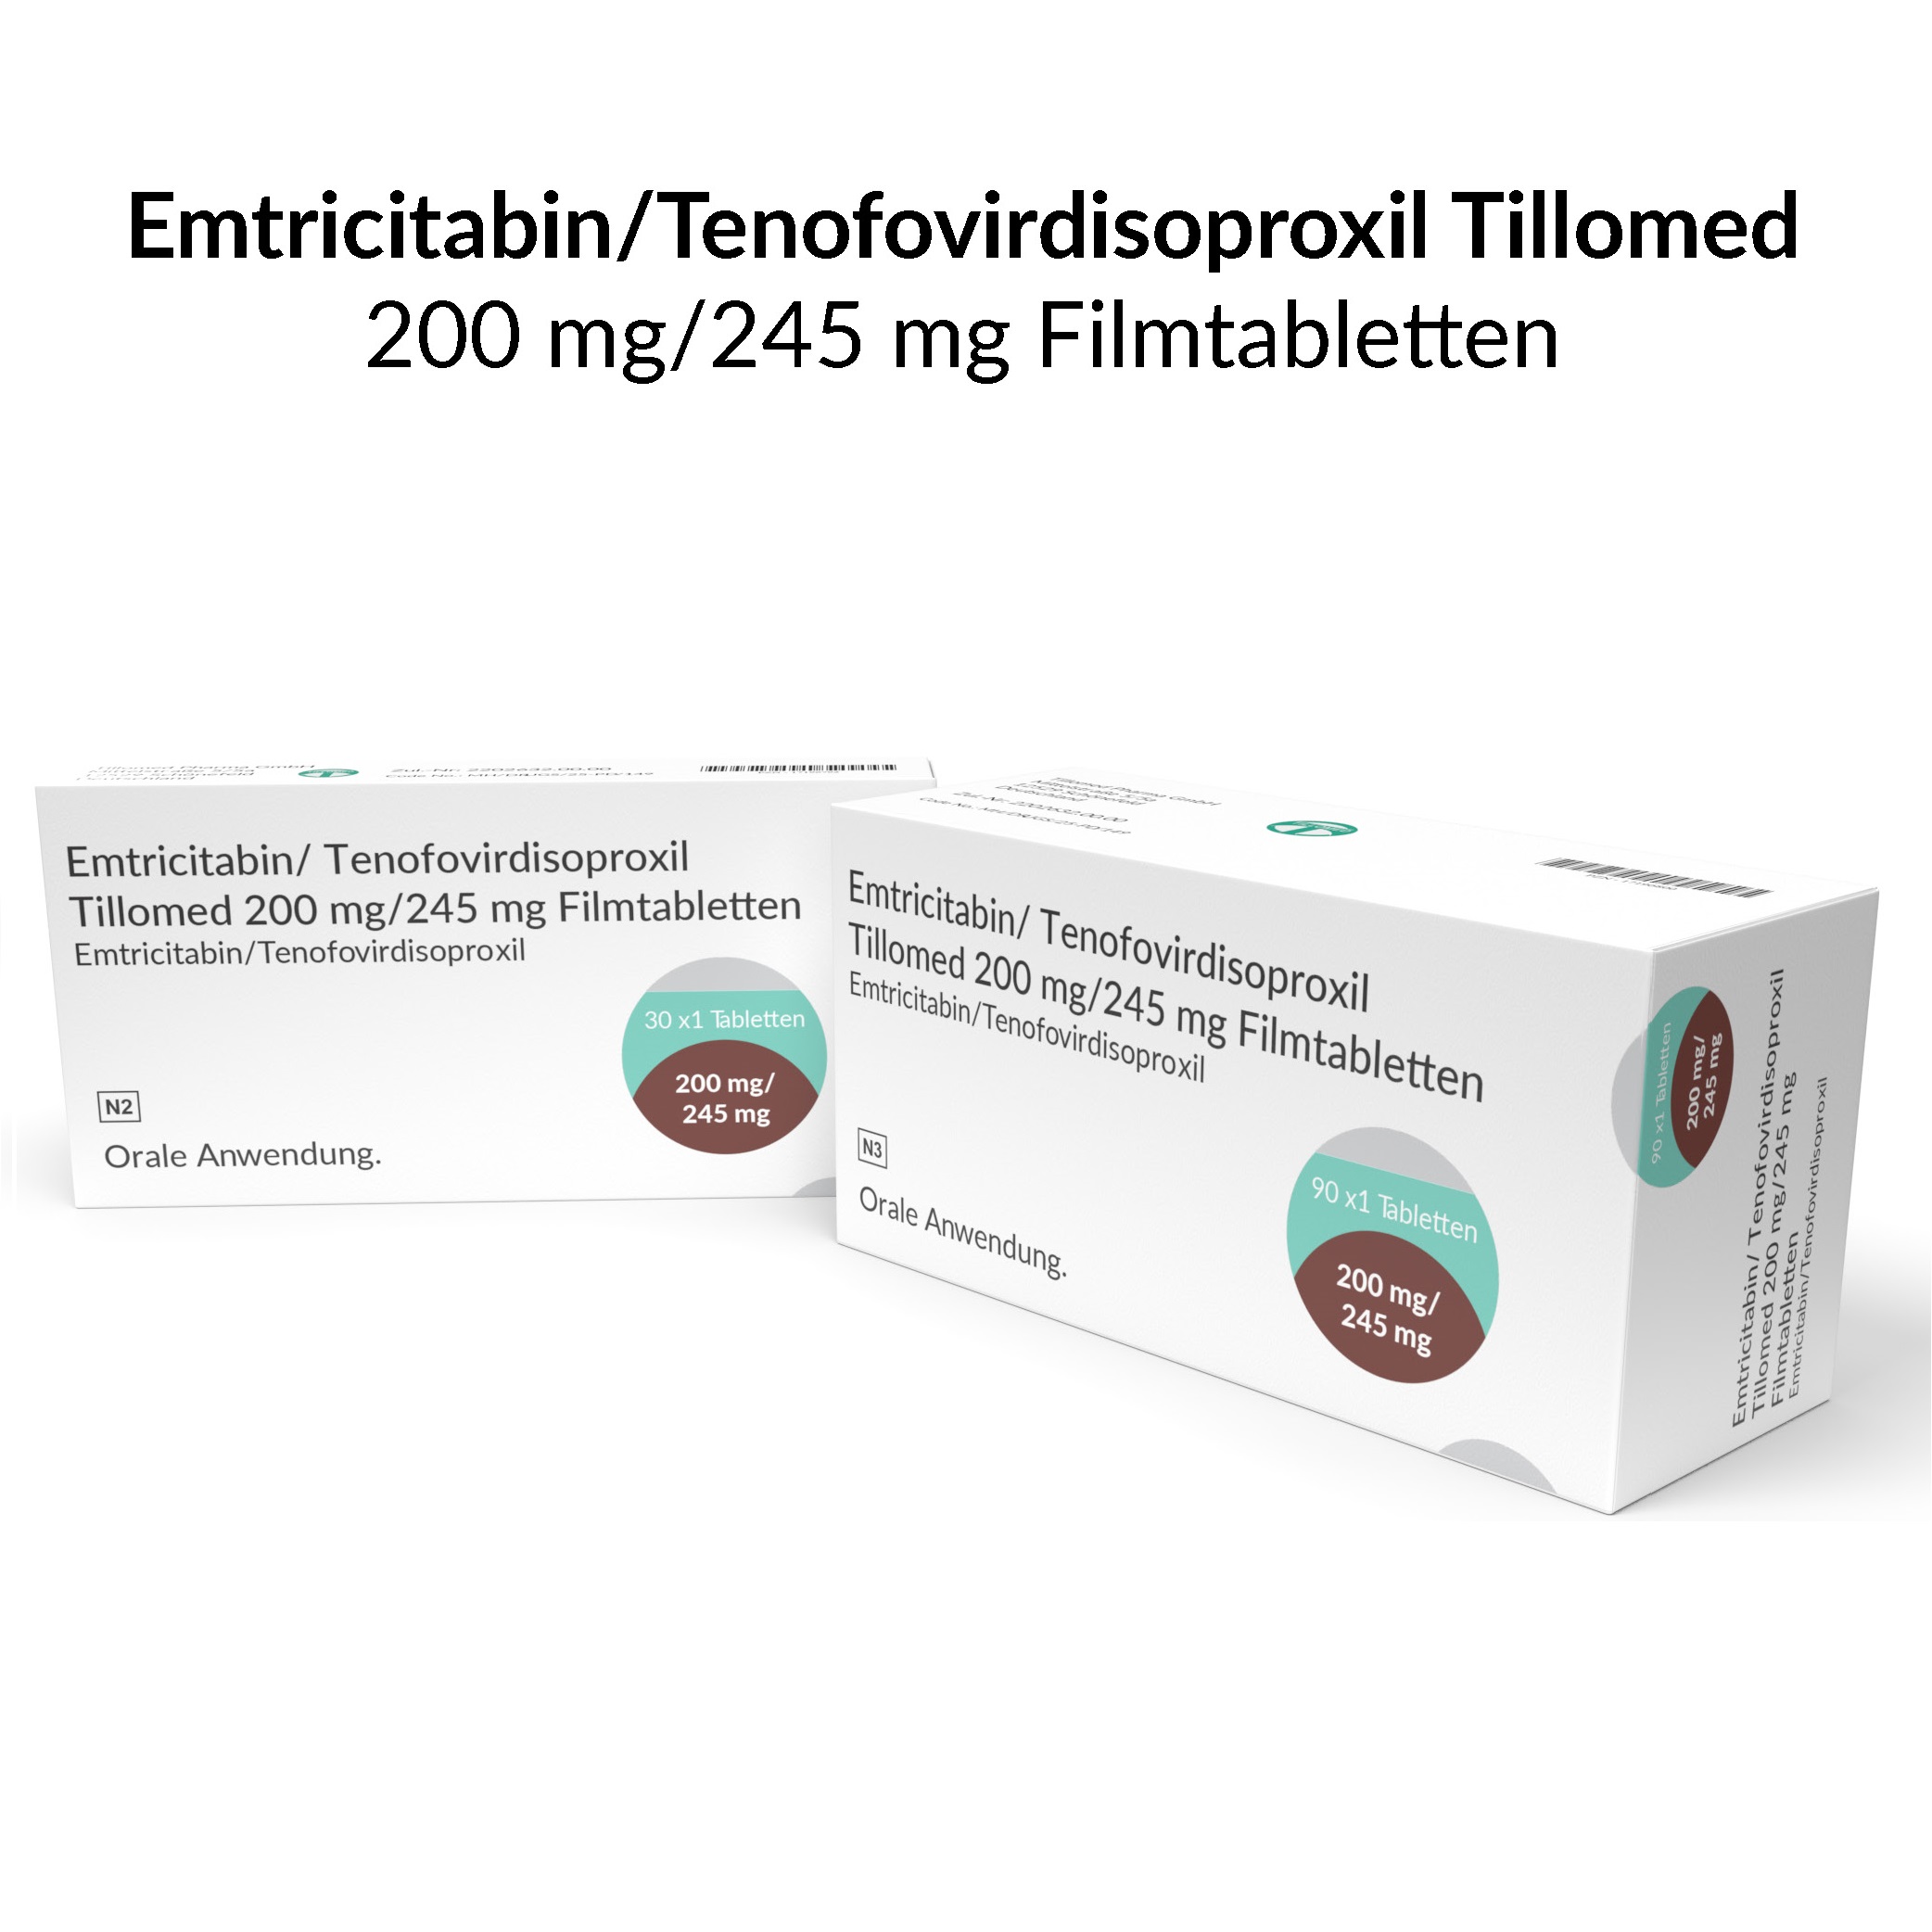 Emtricitabin-Tenofovirdisoproxil Till200mg245mg Filmtabletten